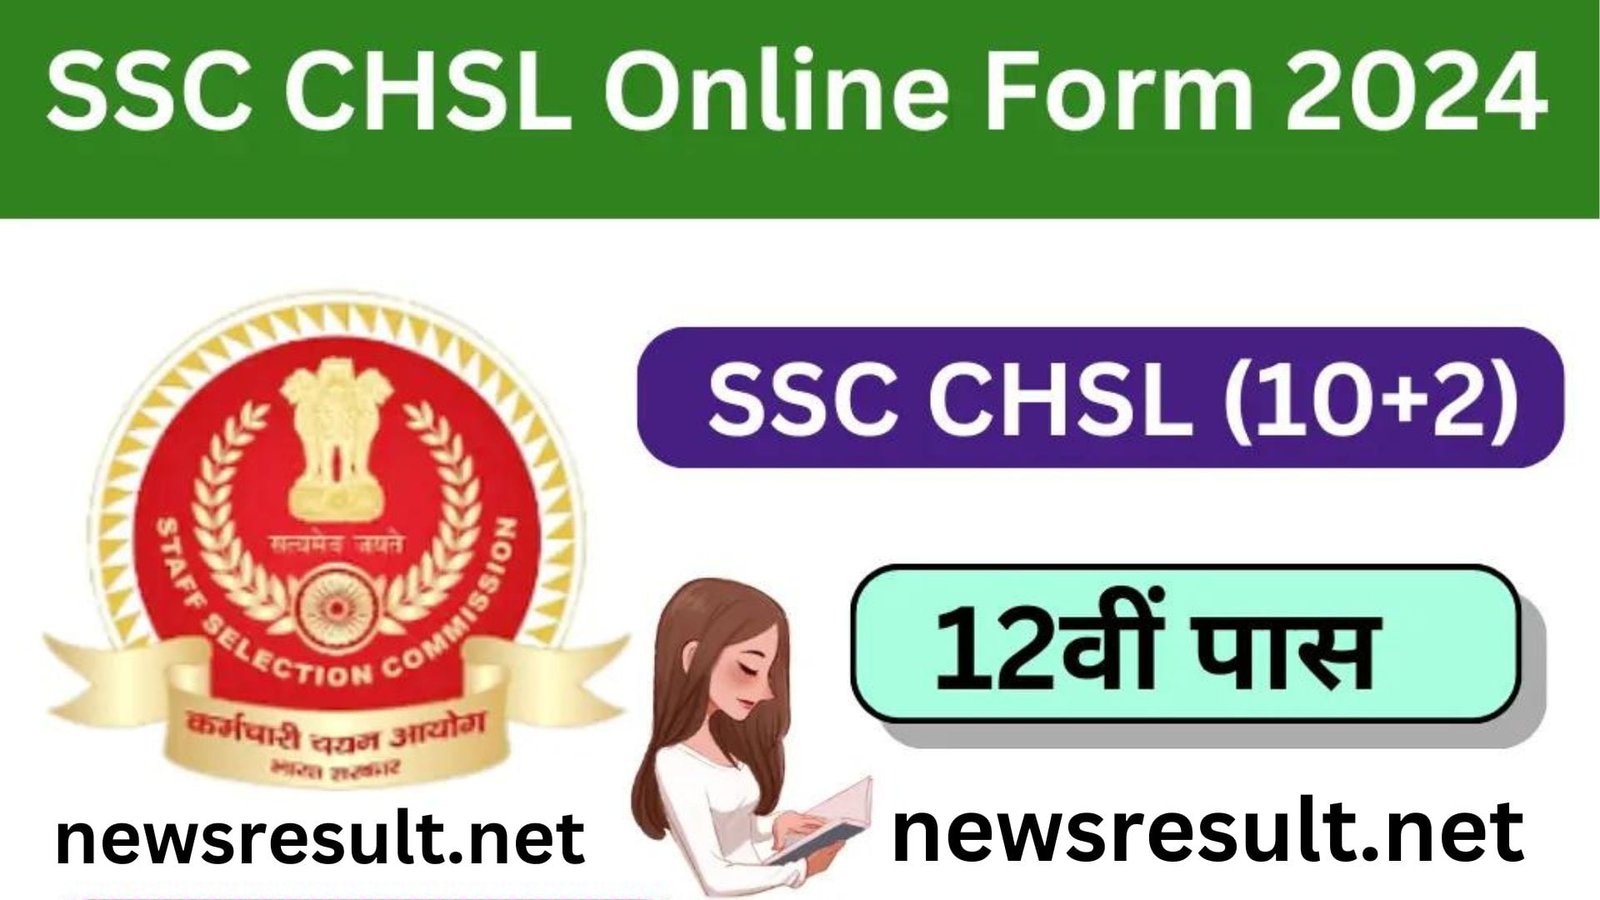 SSC CHSL Form 2024, SSC 10+2 CHSL Online Form 2024 Notification Sarkari Result, ssc chsl exam date 2024